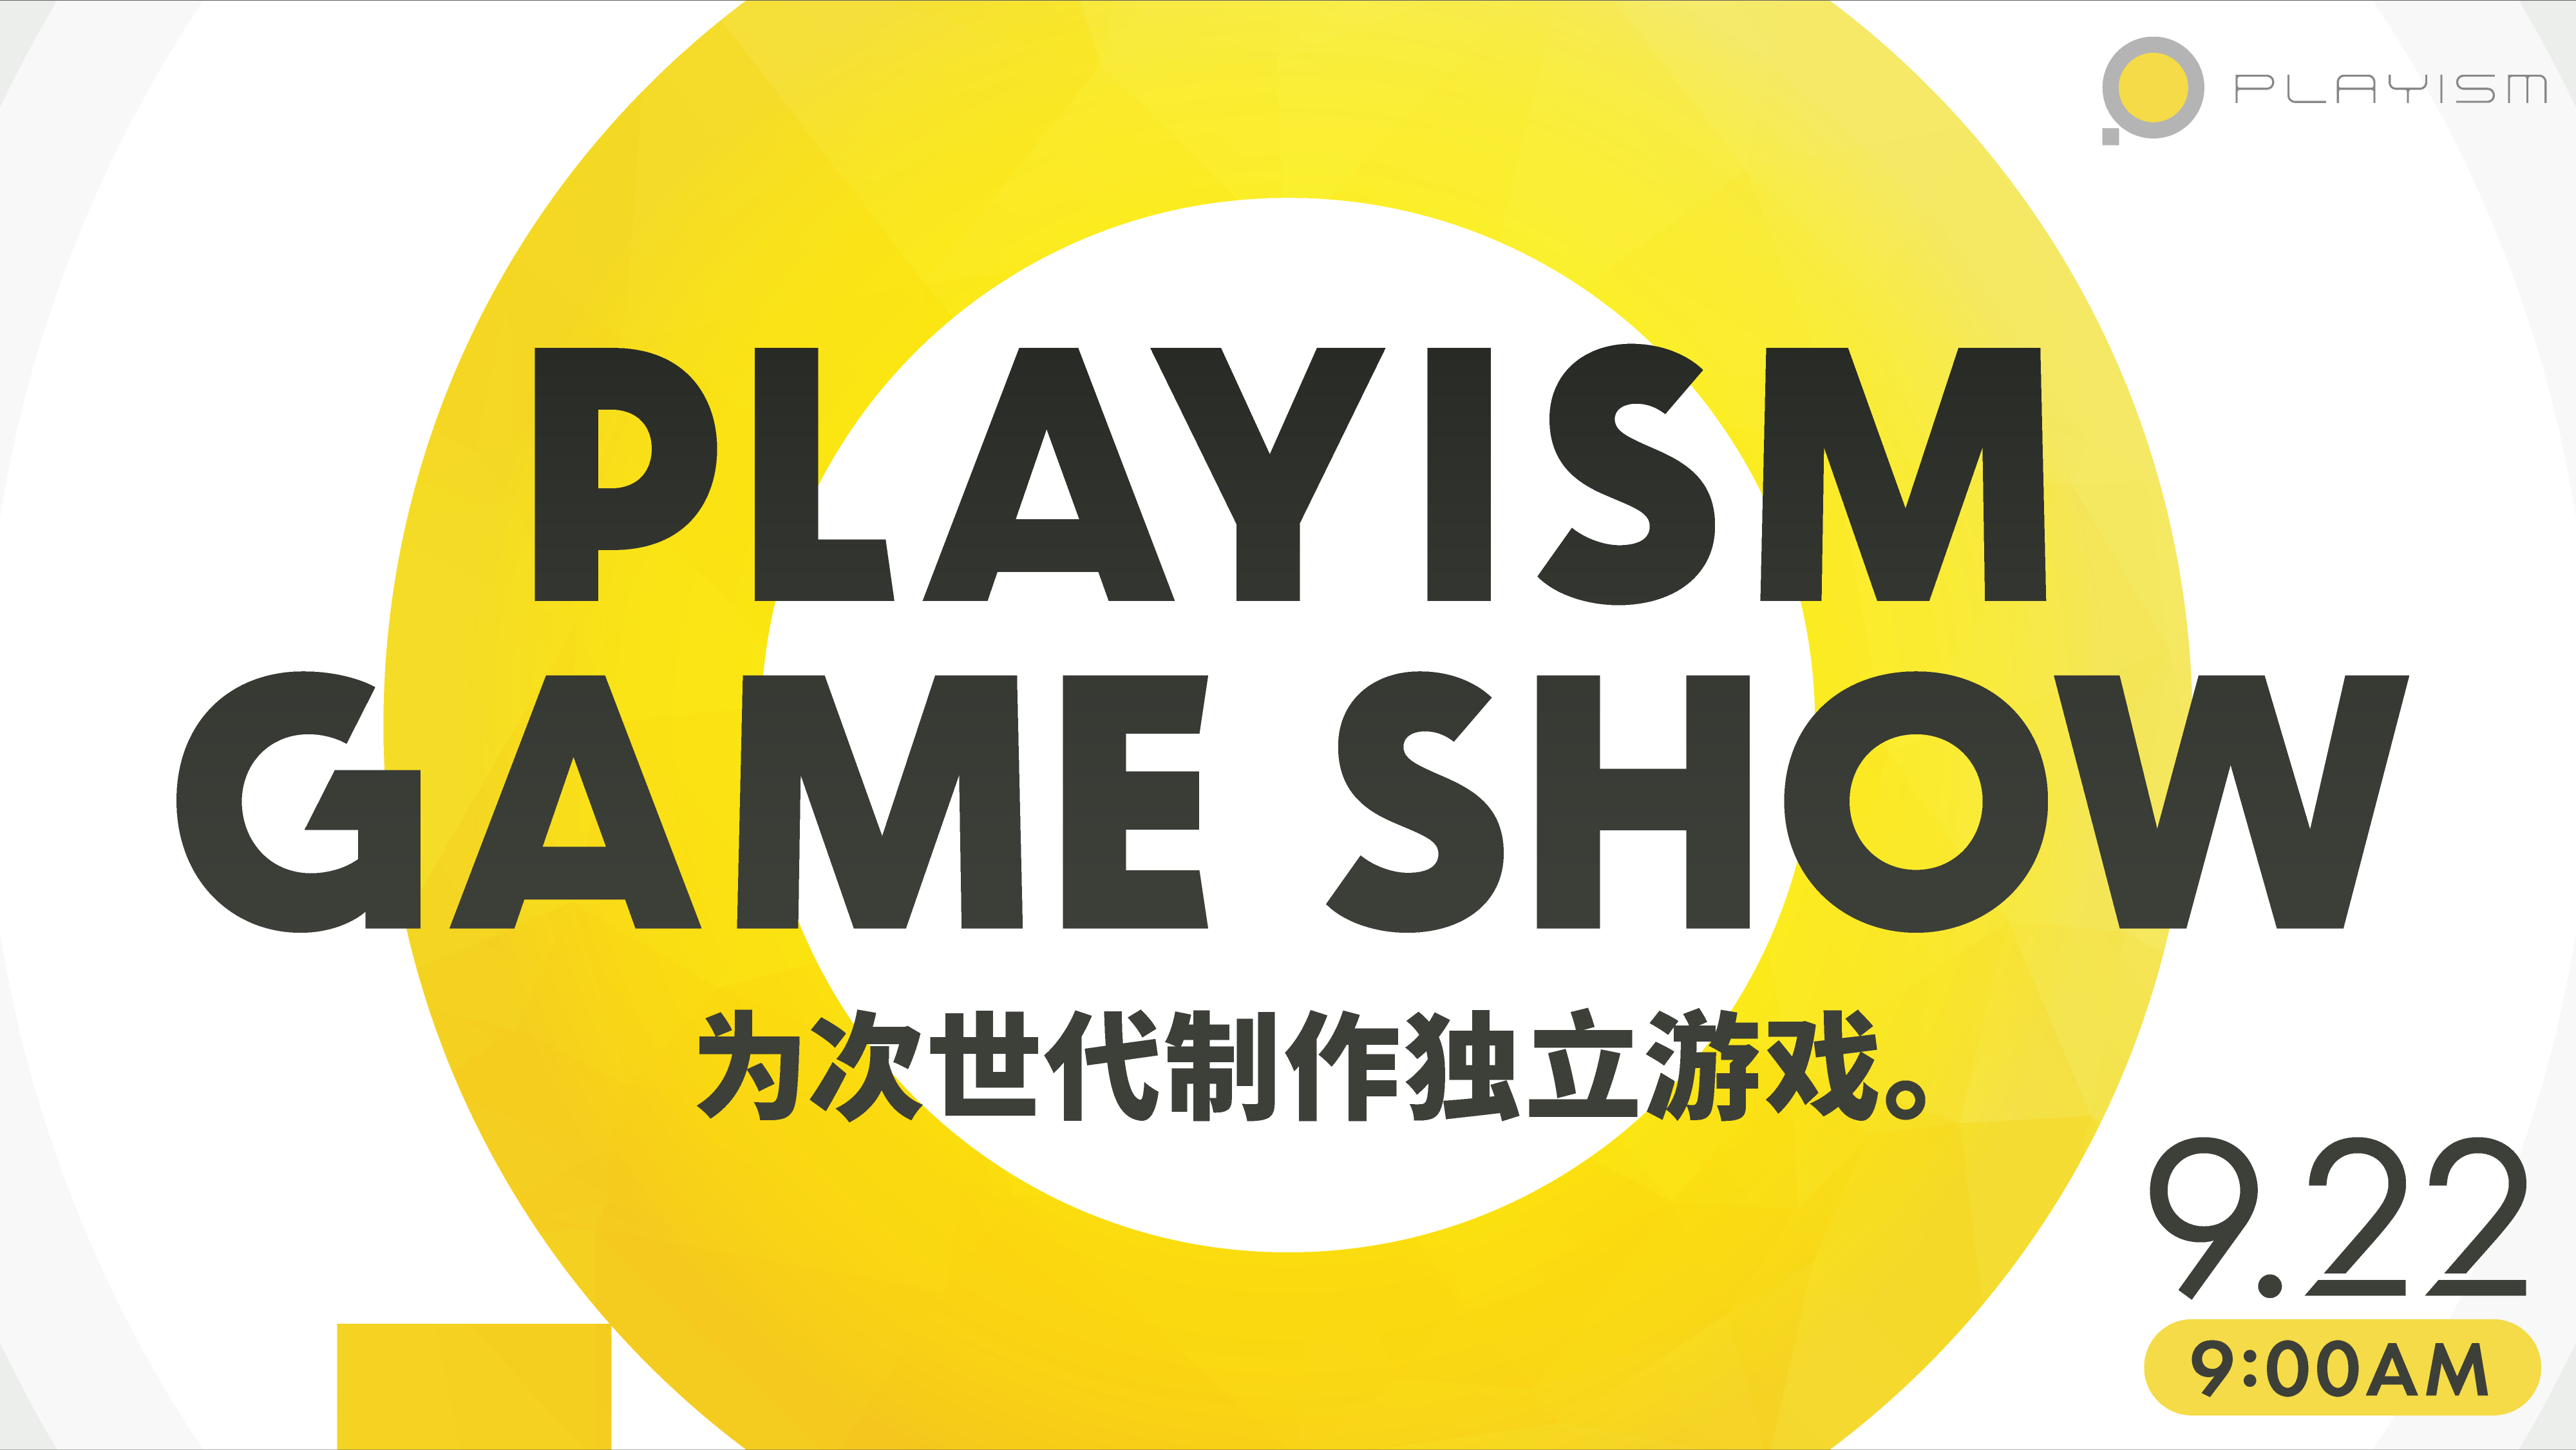 Playism游戏展将于北京工夫9月22日上午9里举办